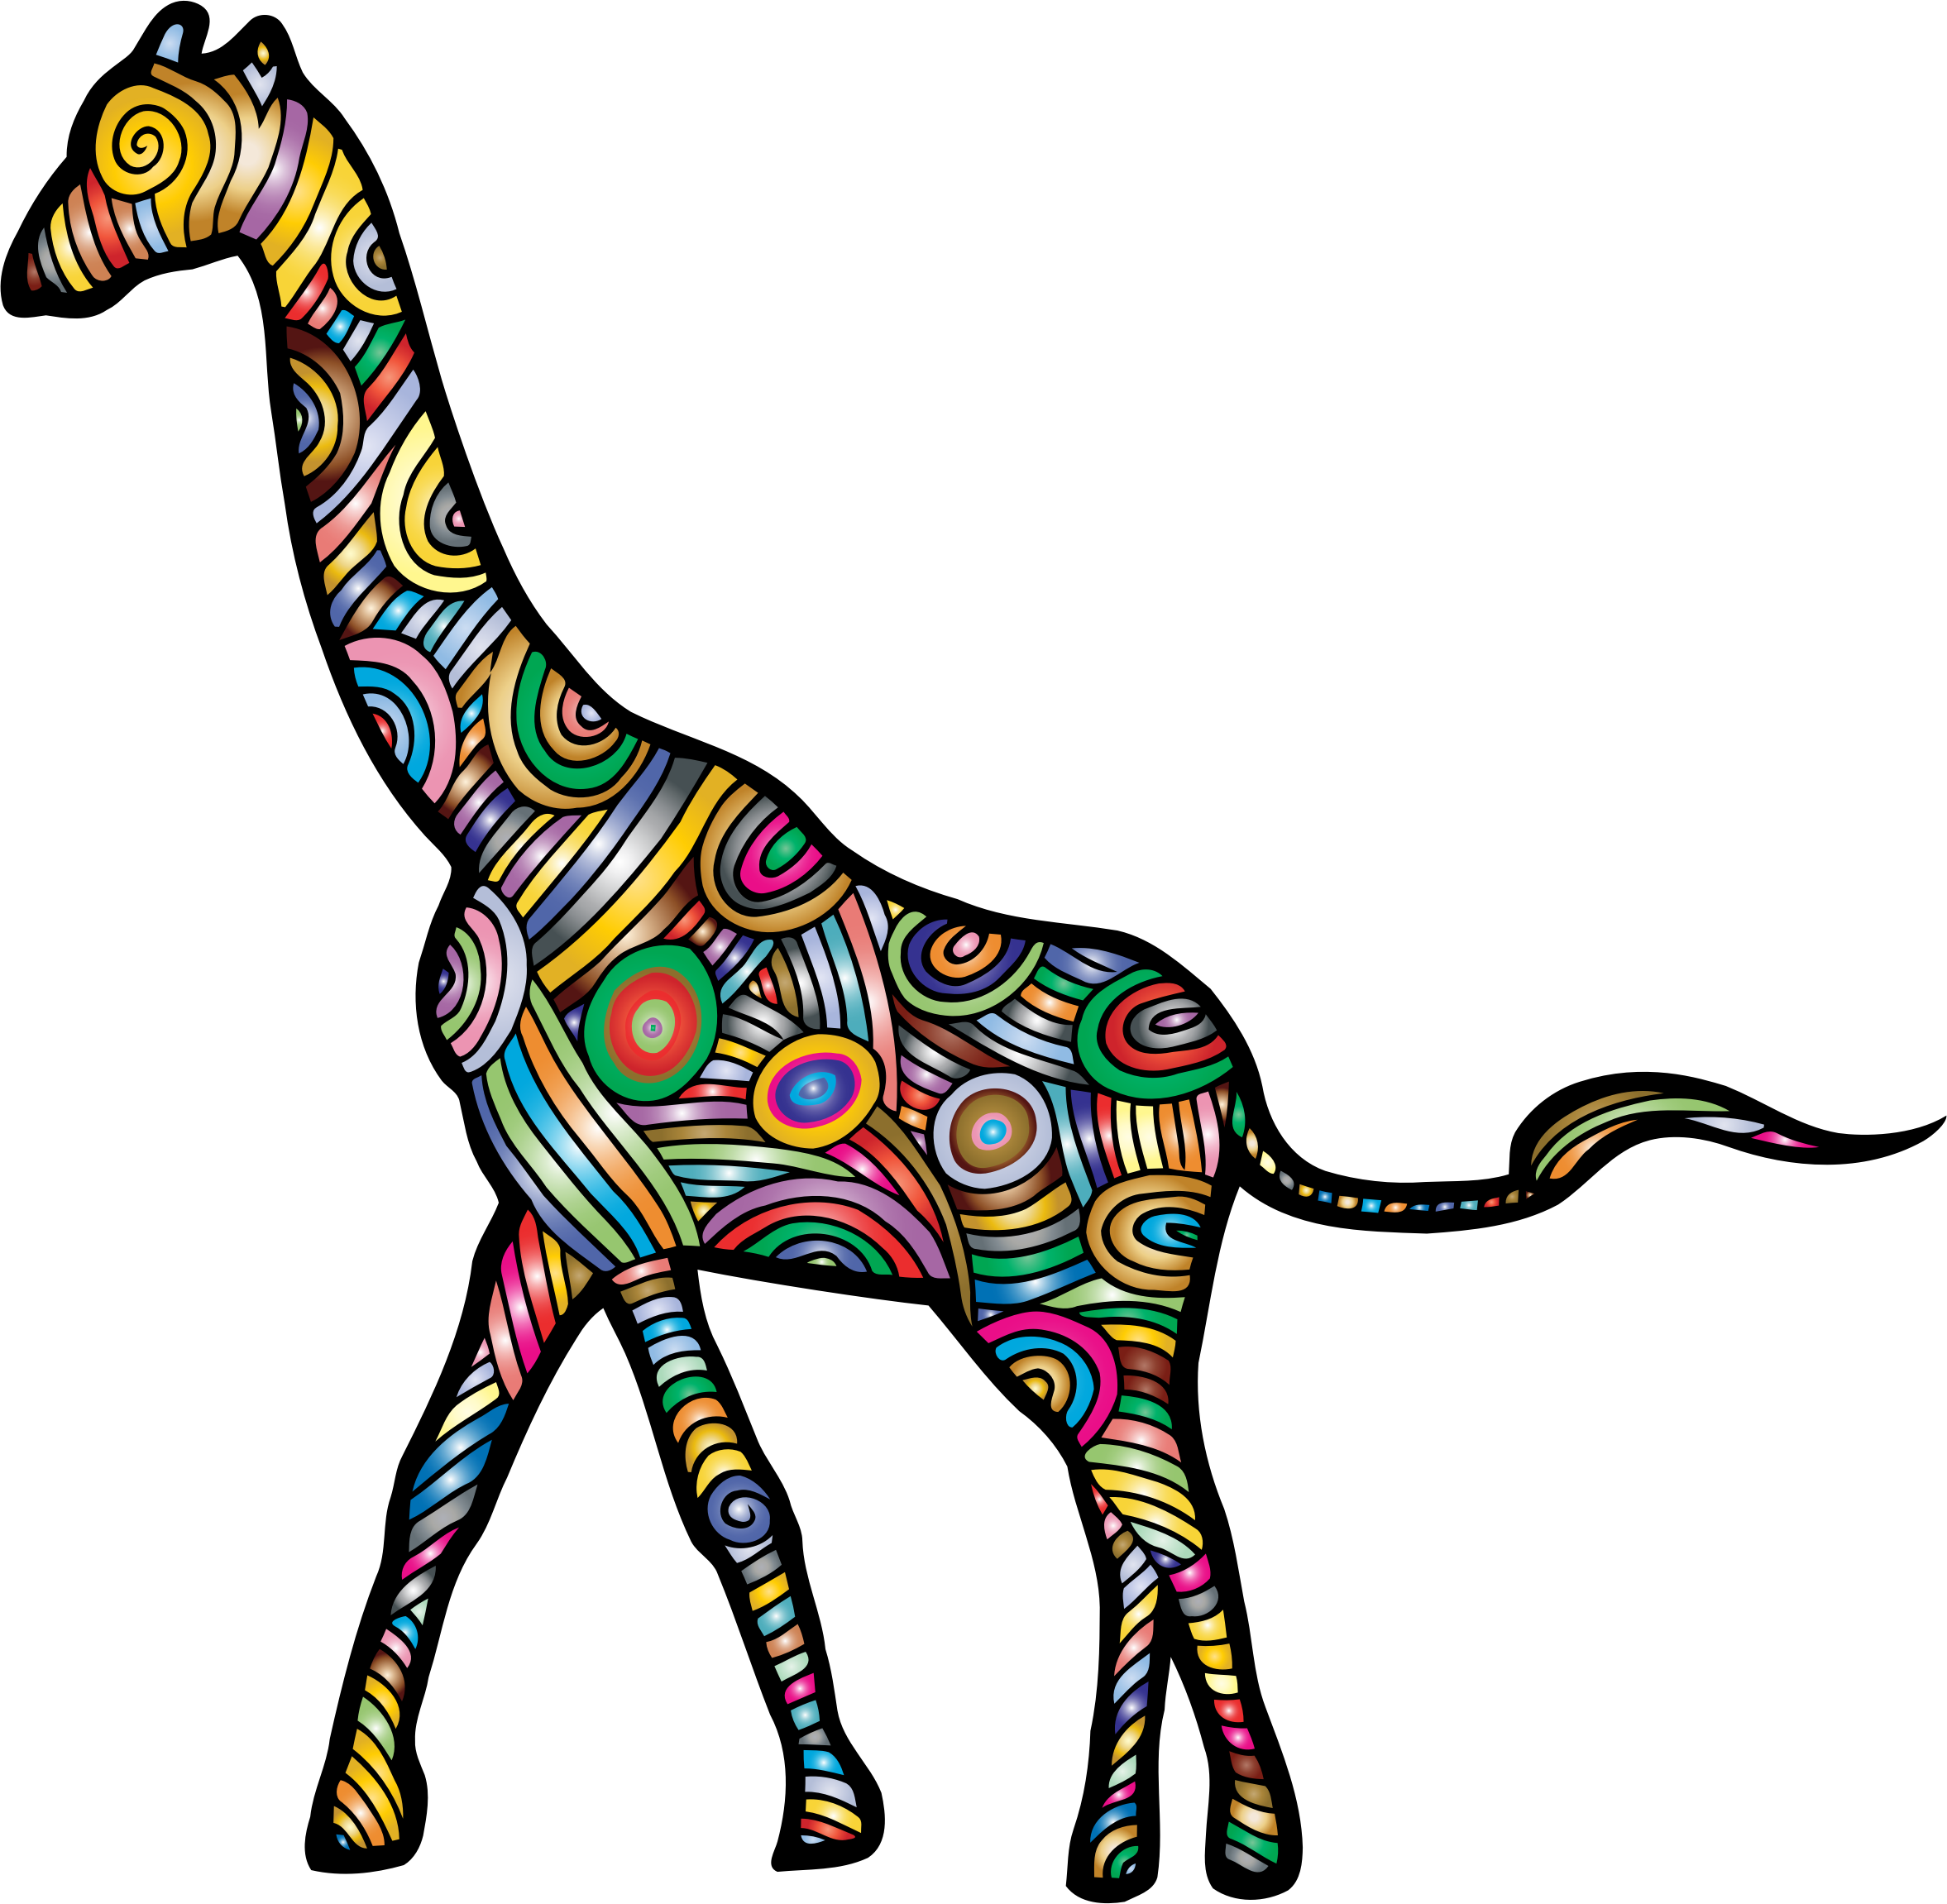 Big Image - Stylized Giraffe (2354x2302)